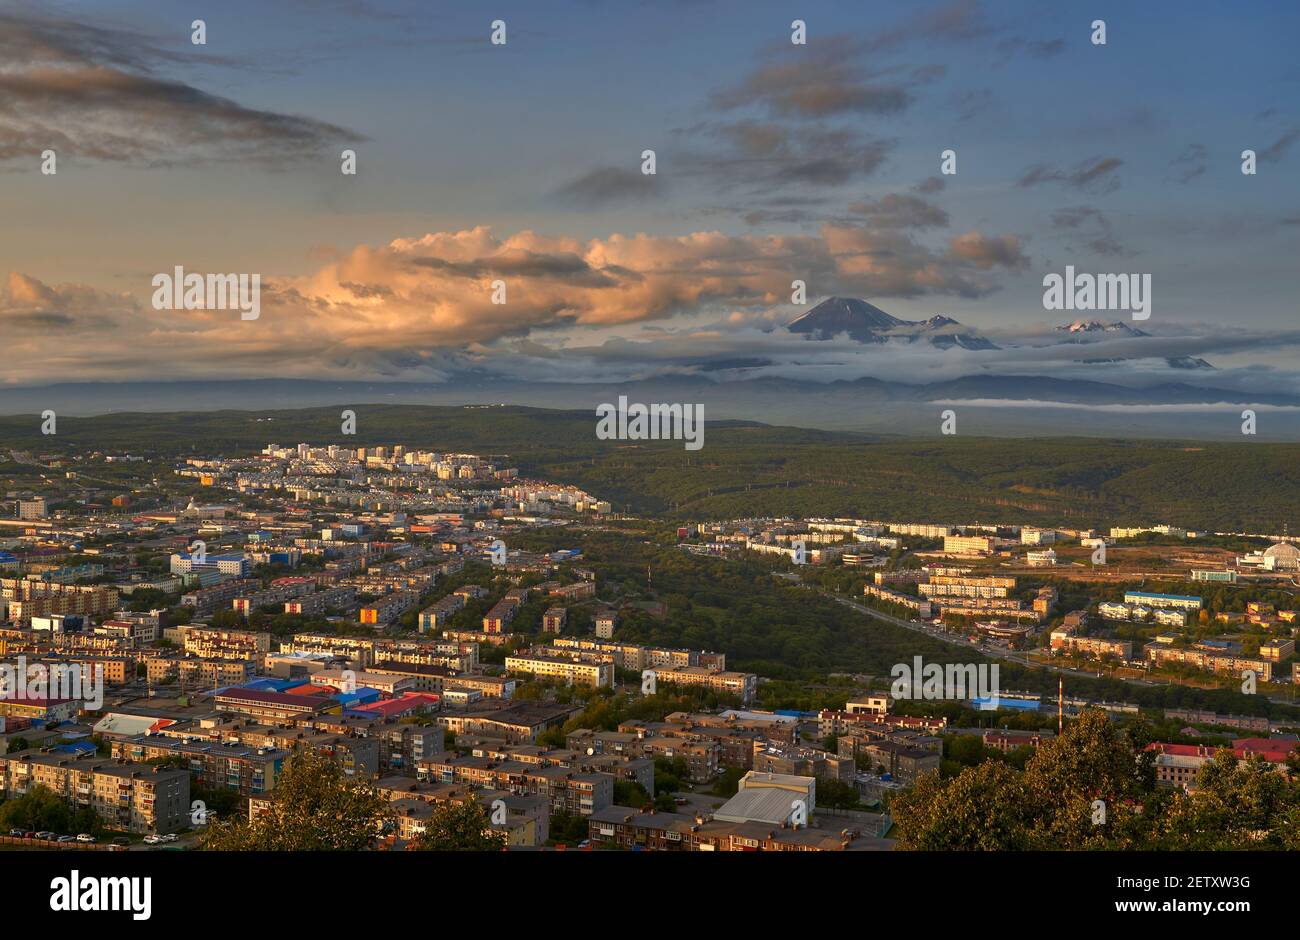 Petropavlovsk-Kamchatsky city at sunset Stock Photo